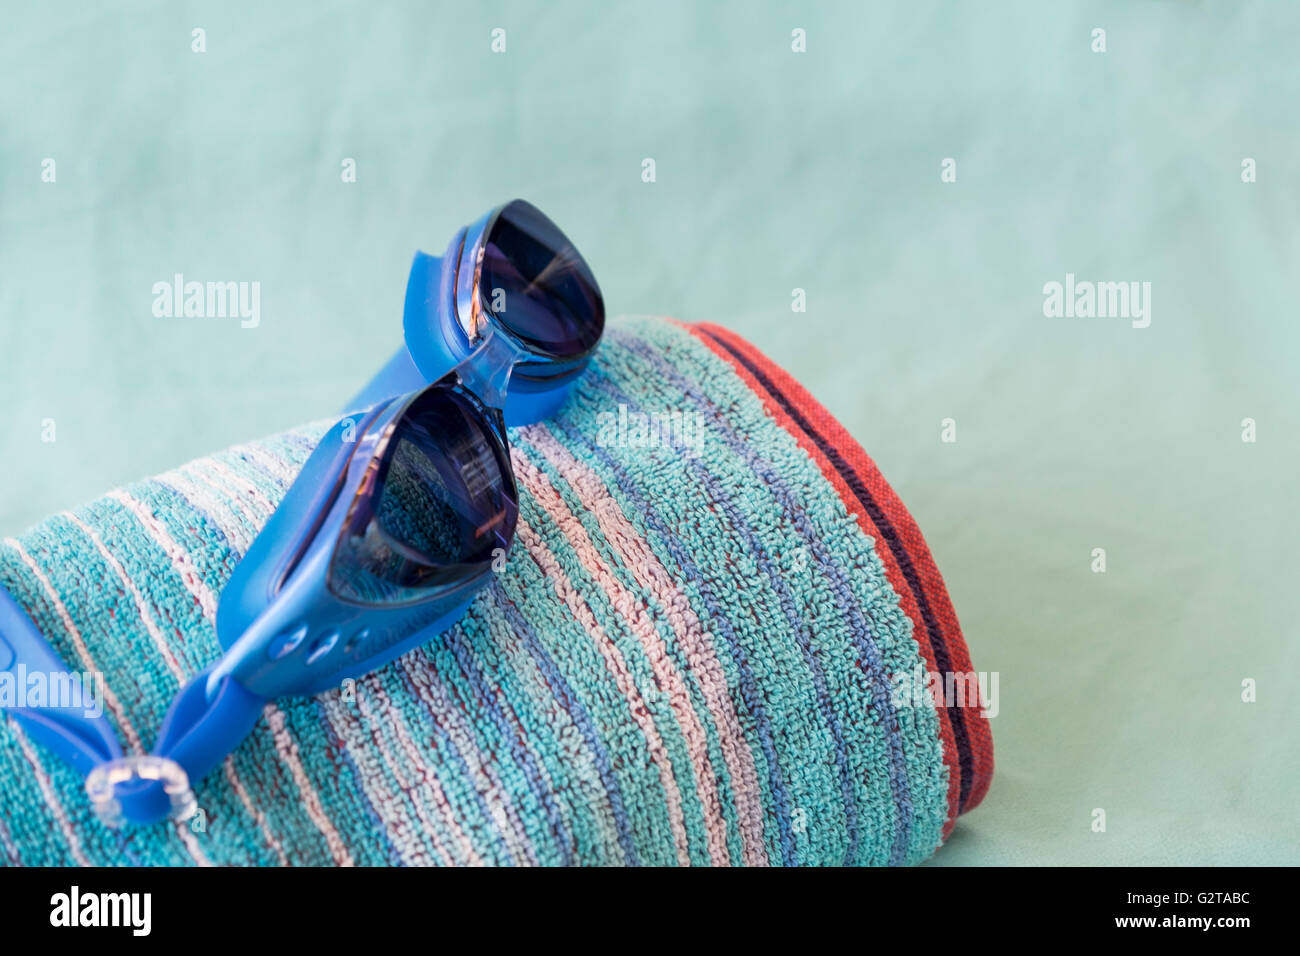 Schwimmbrillen und Strandtuch auf türkis blauem Hintergrund Stockfoto